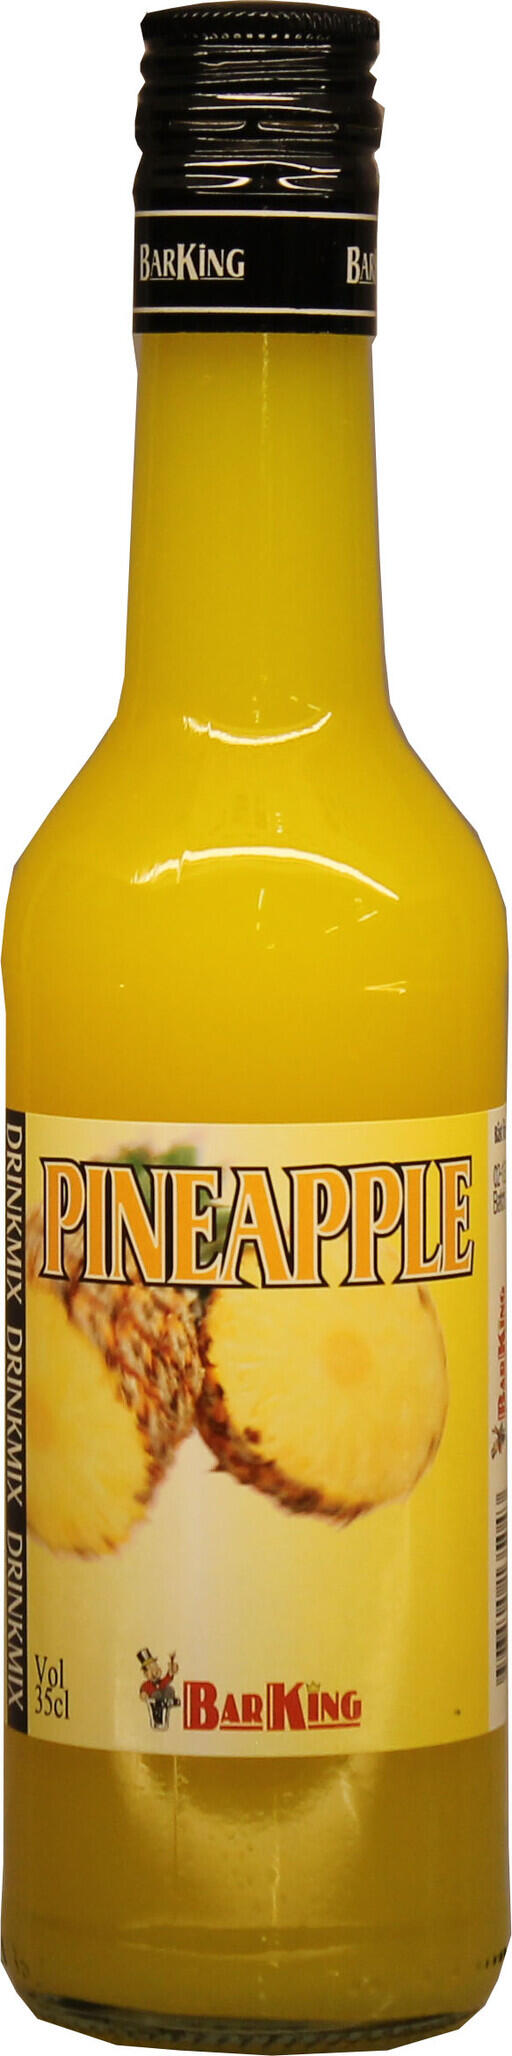 Blanda goda ananas-drinkar med denna goda Pineapple drinkmix från BarKing.